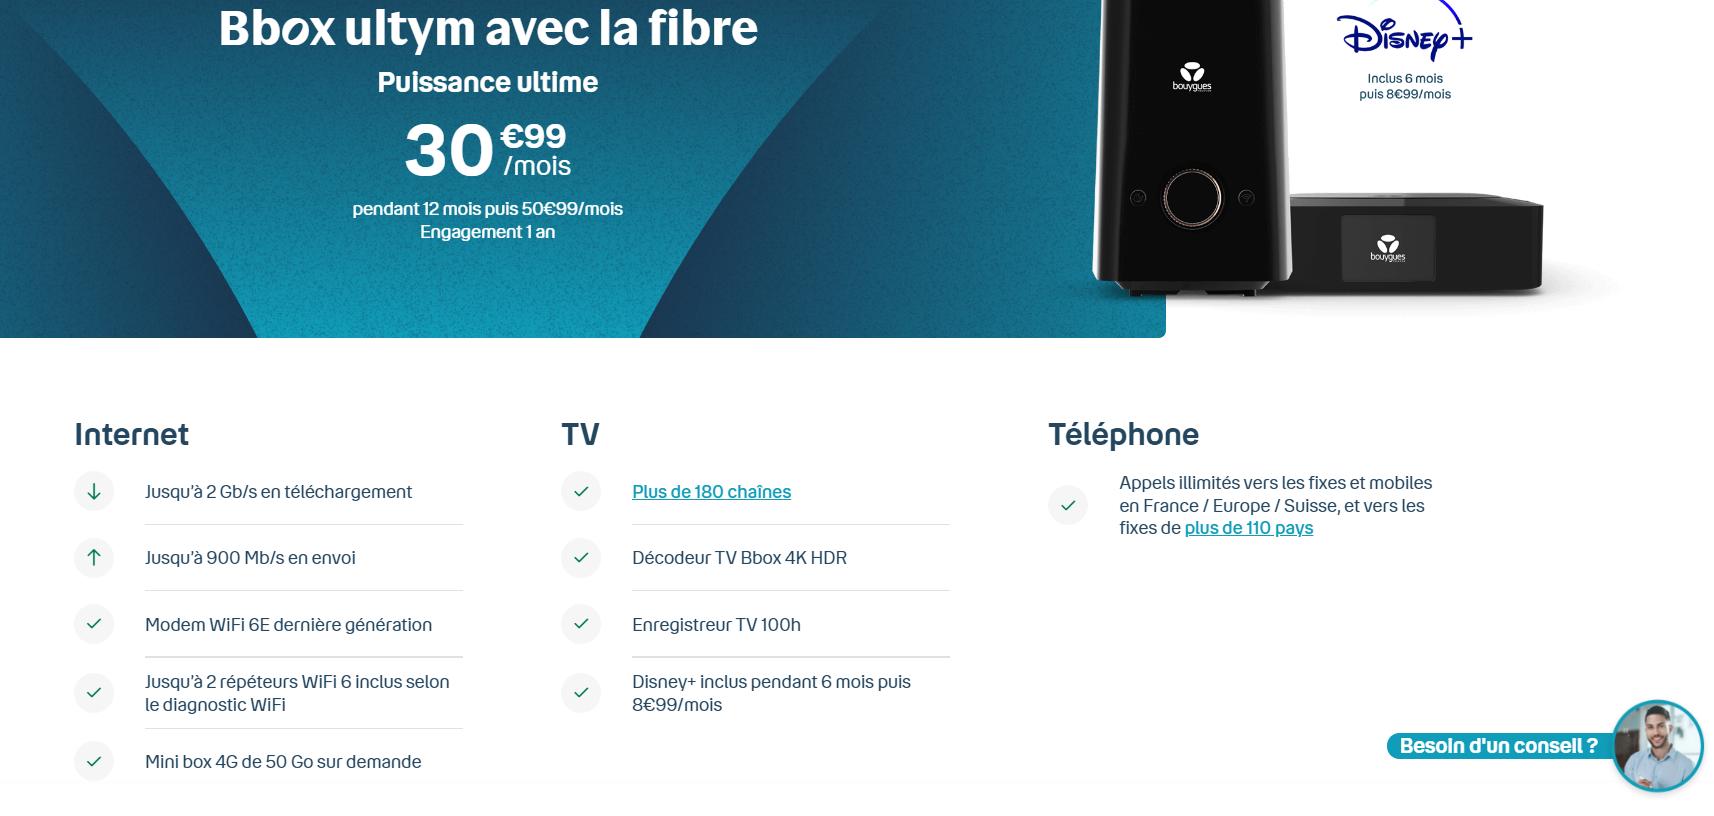 WiFi 6E : le meilleur des WiFi partout chez vous, Bouygues Telecom